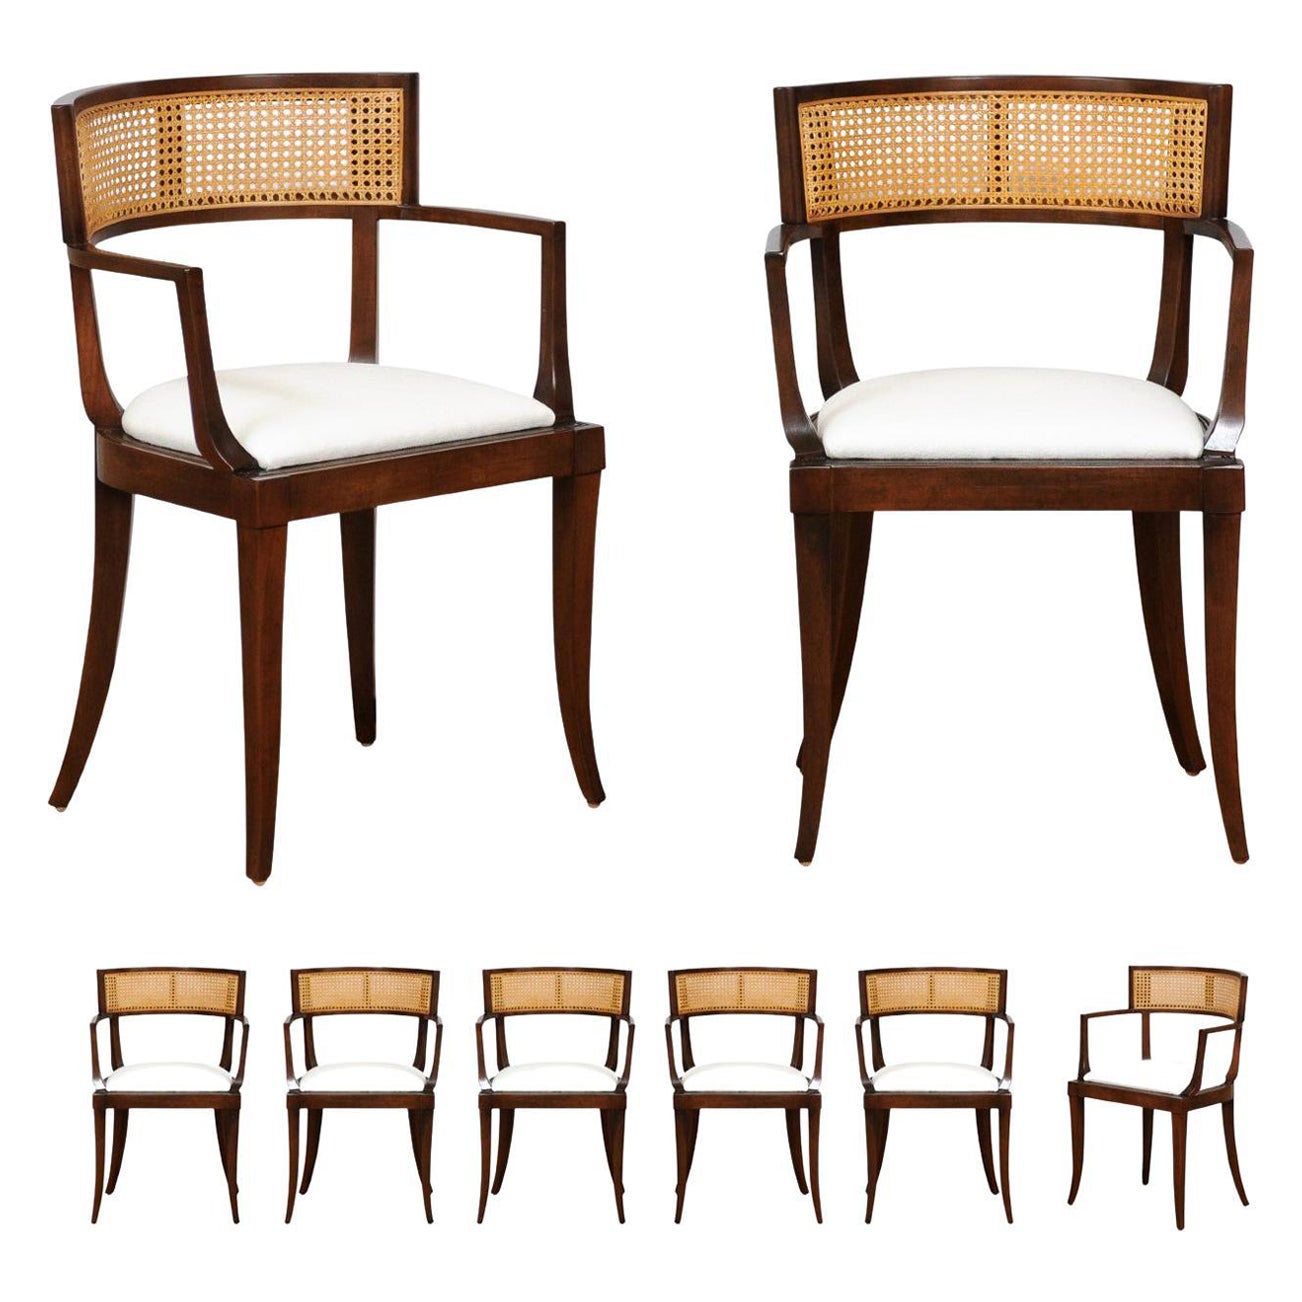 Exquis ensemble de 8 chaises de salle à manger en rotin Klismos à tous les accoudoirs par Baker, vers 1958